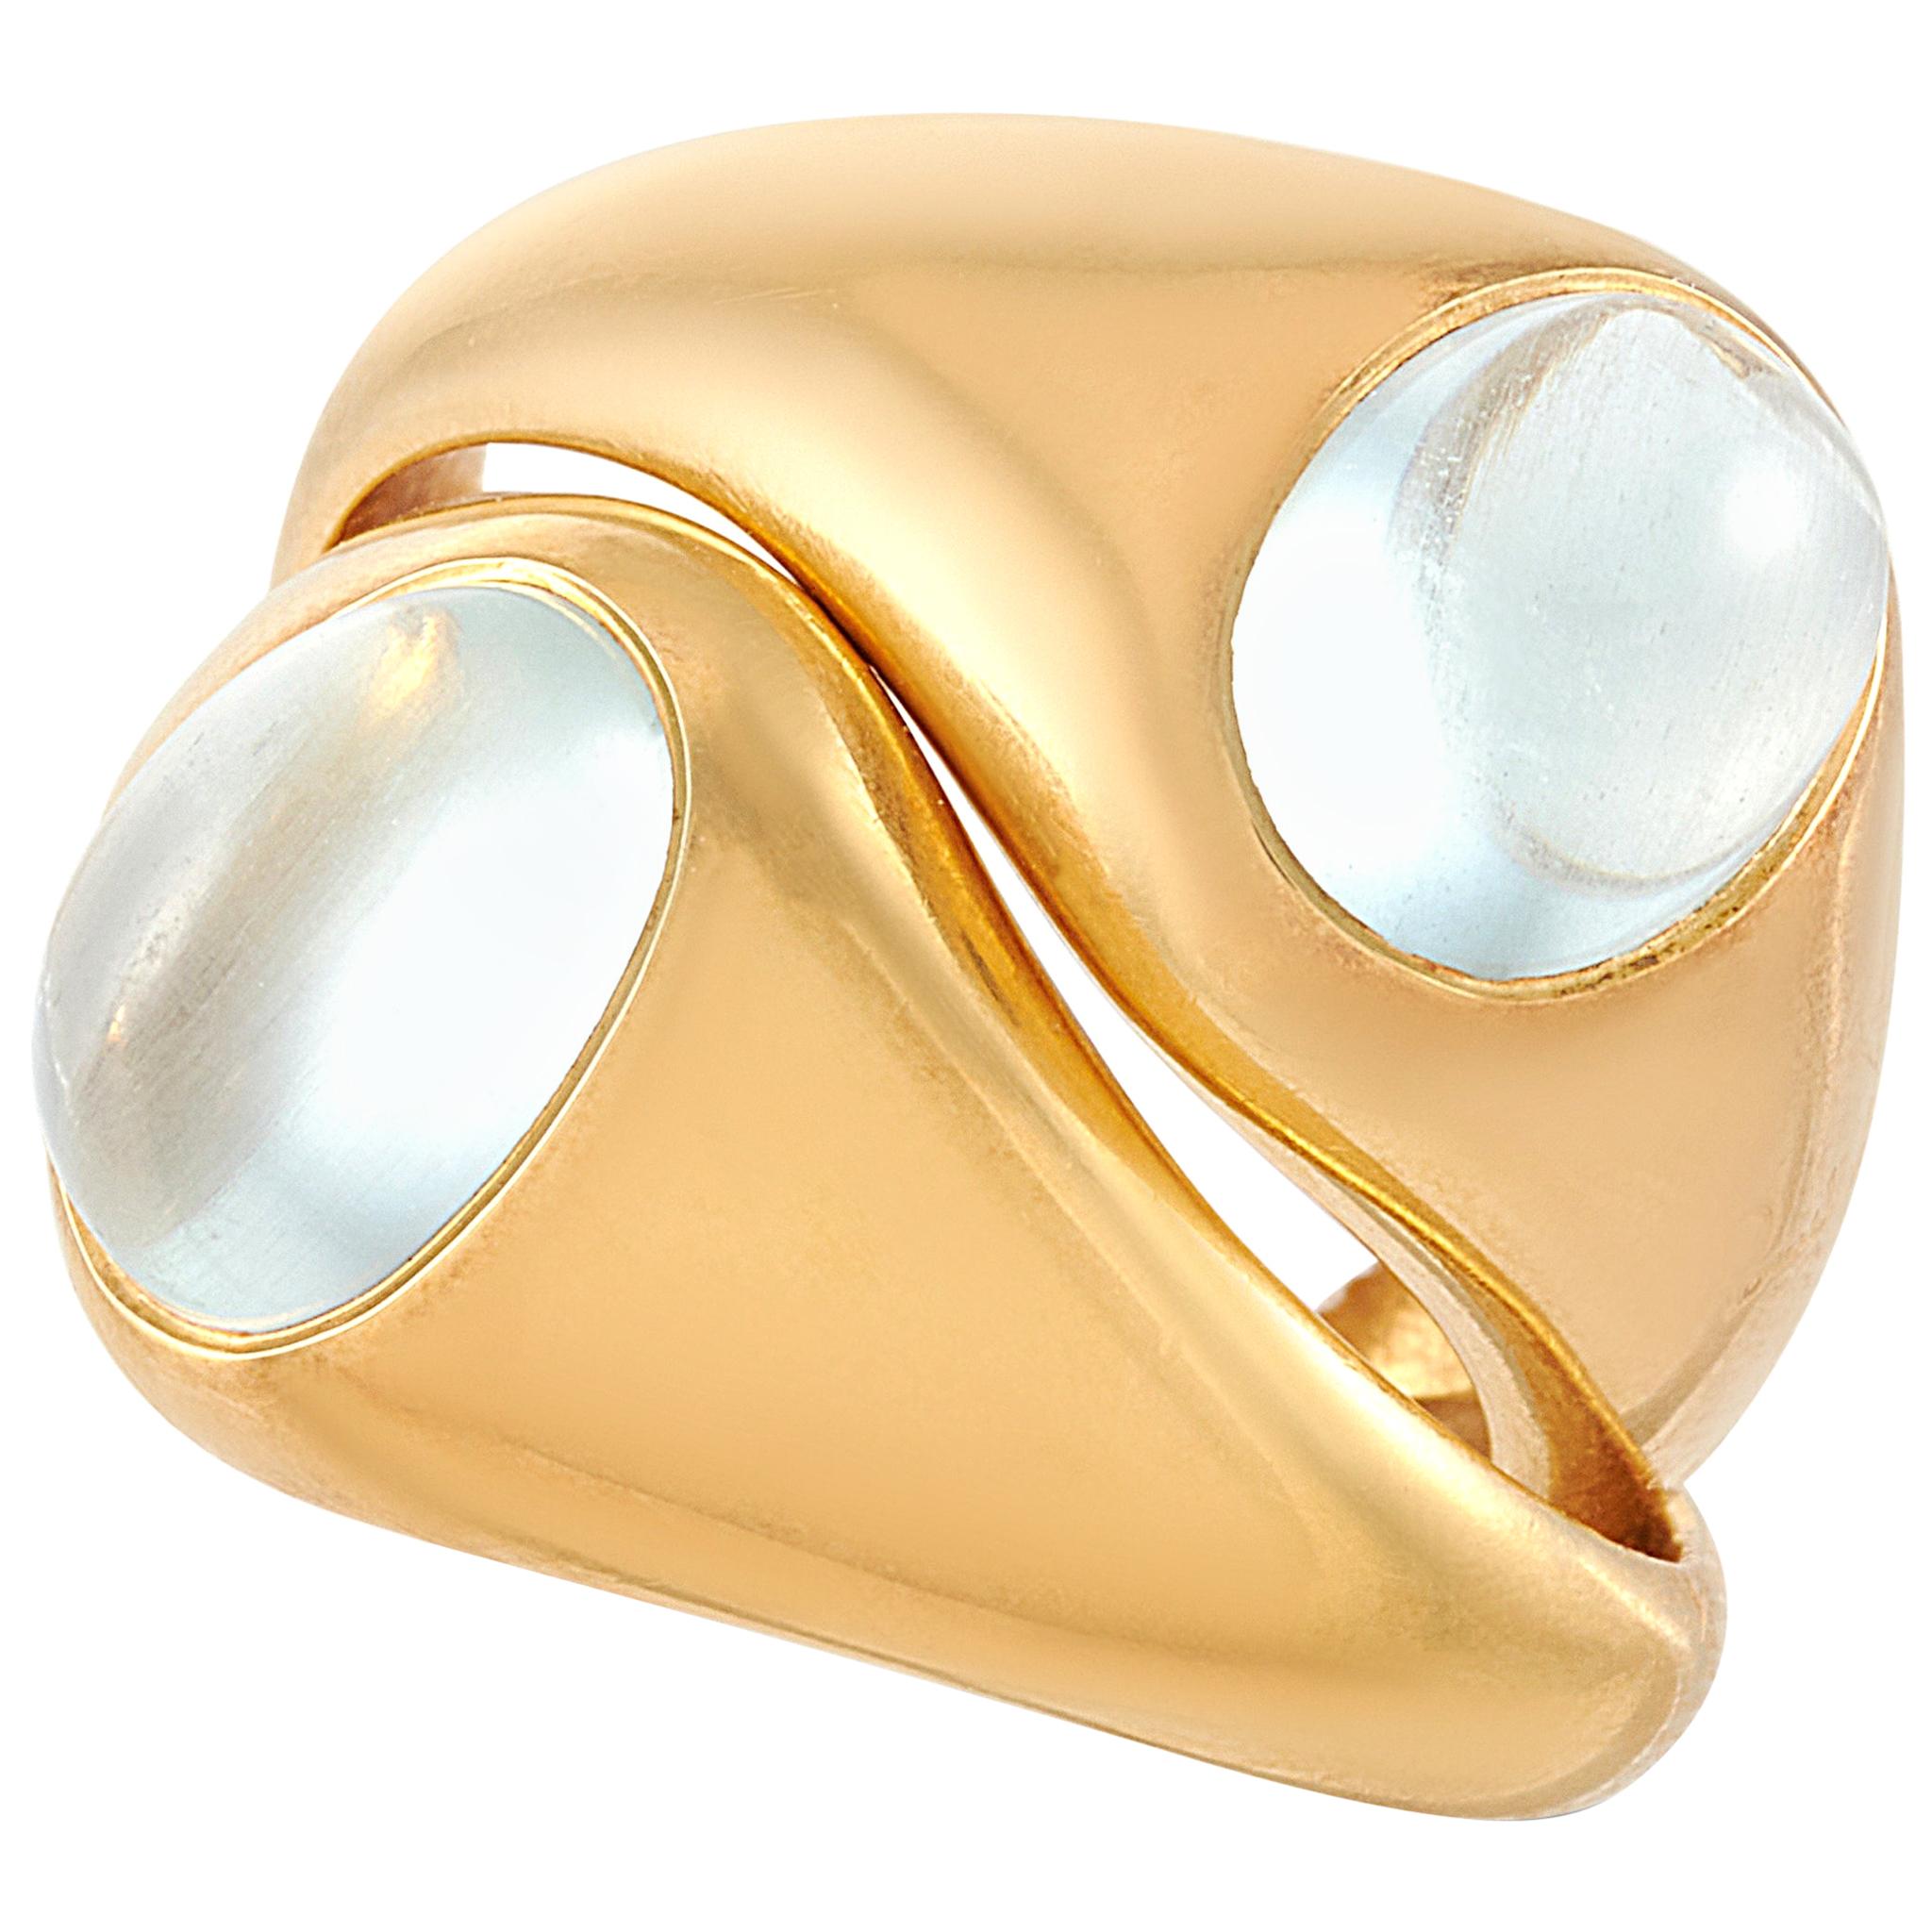 Pomellato 18 Karat Yellow Gold Aquamarine Ring